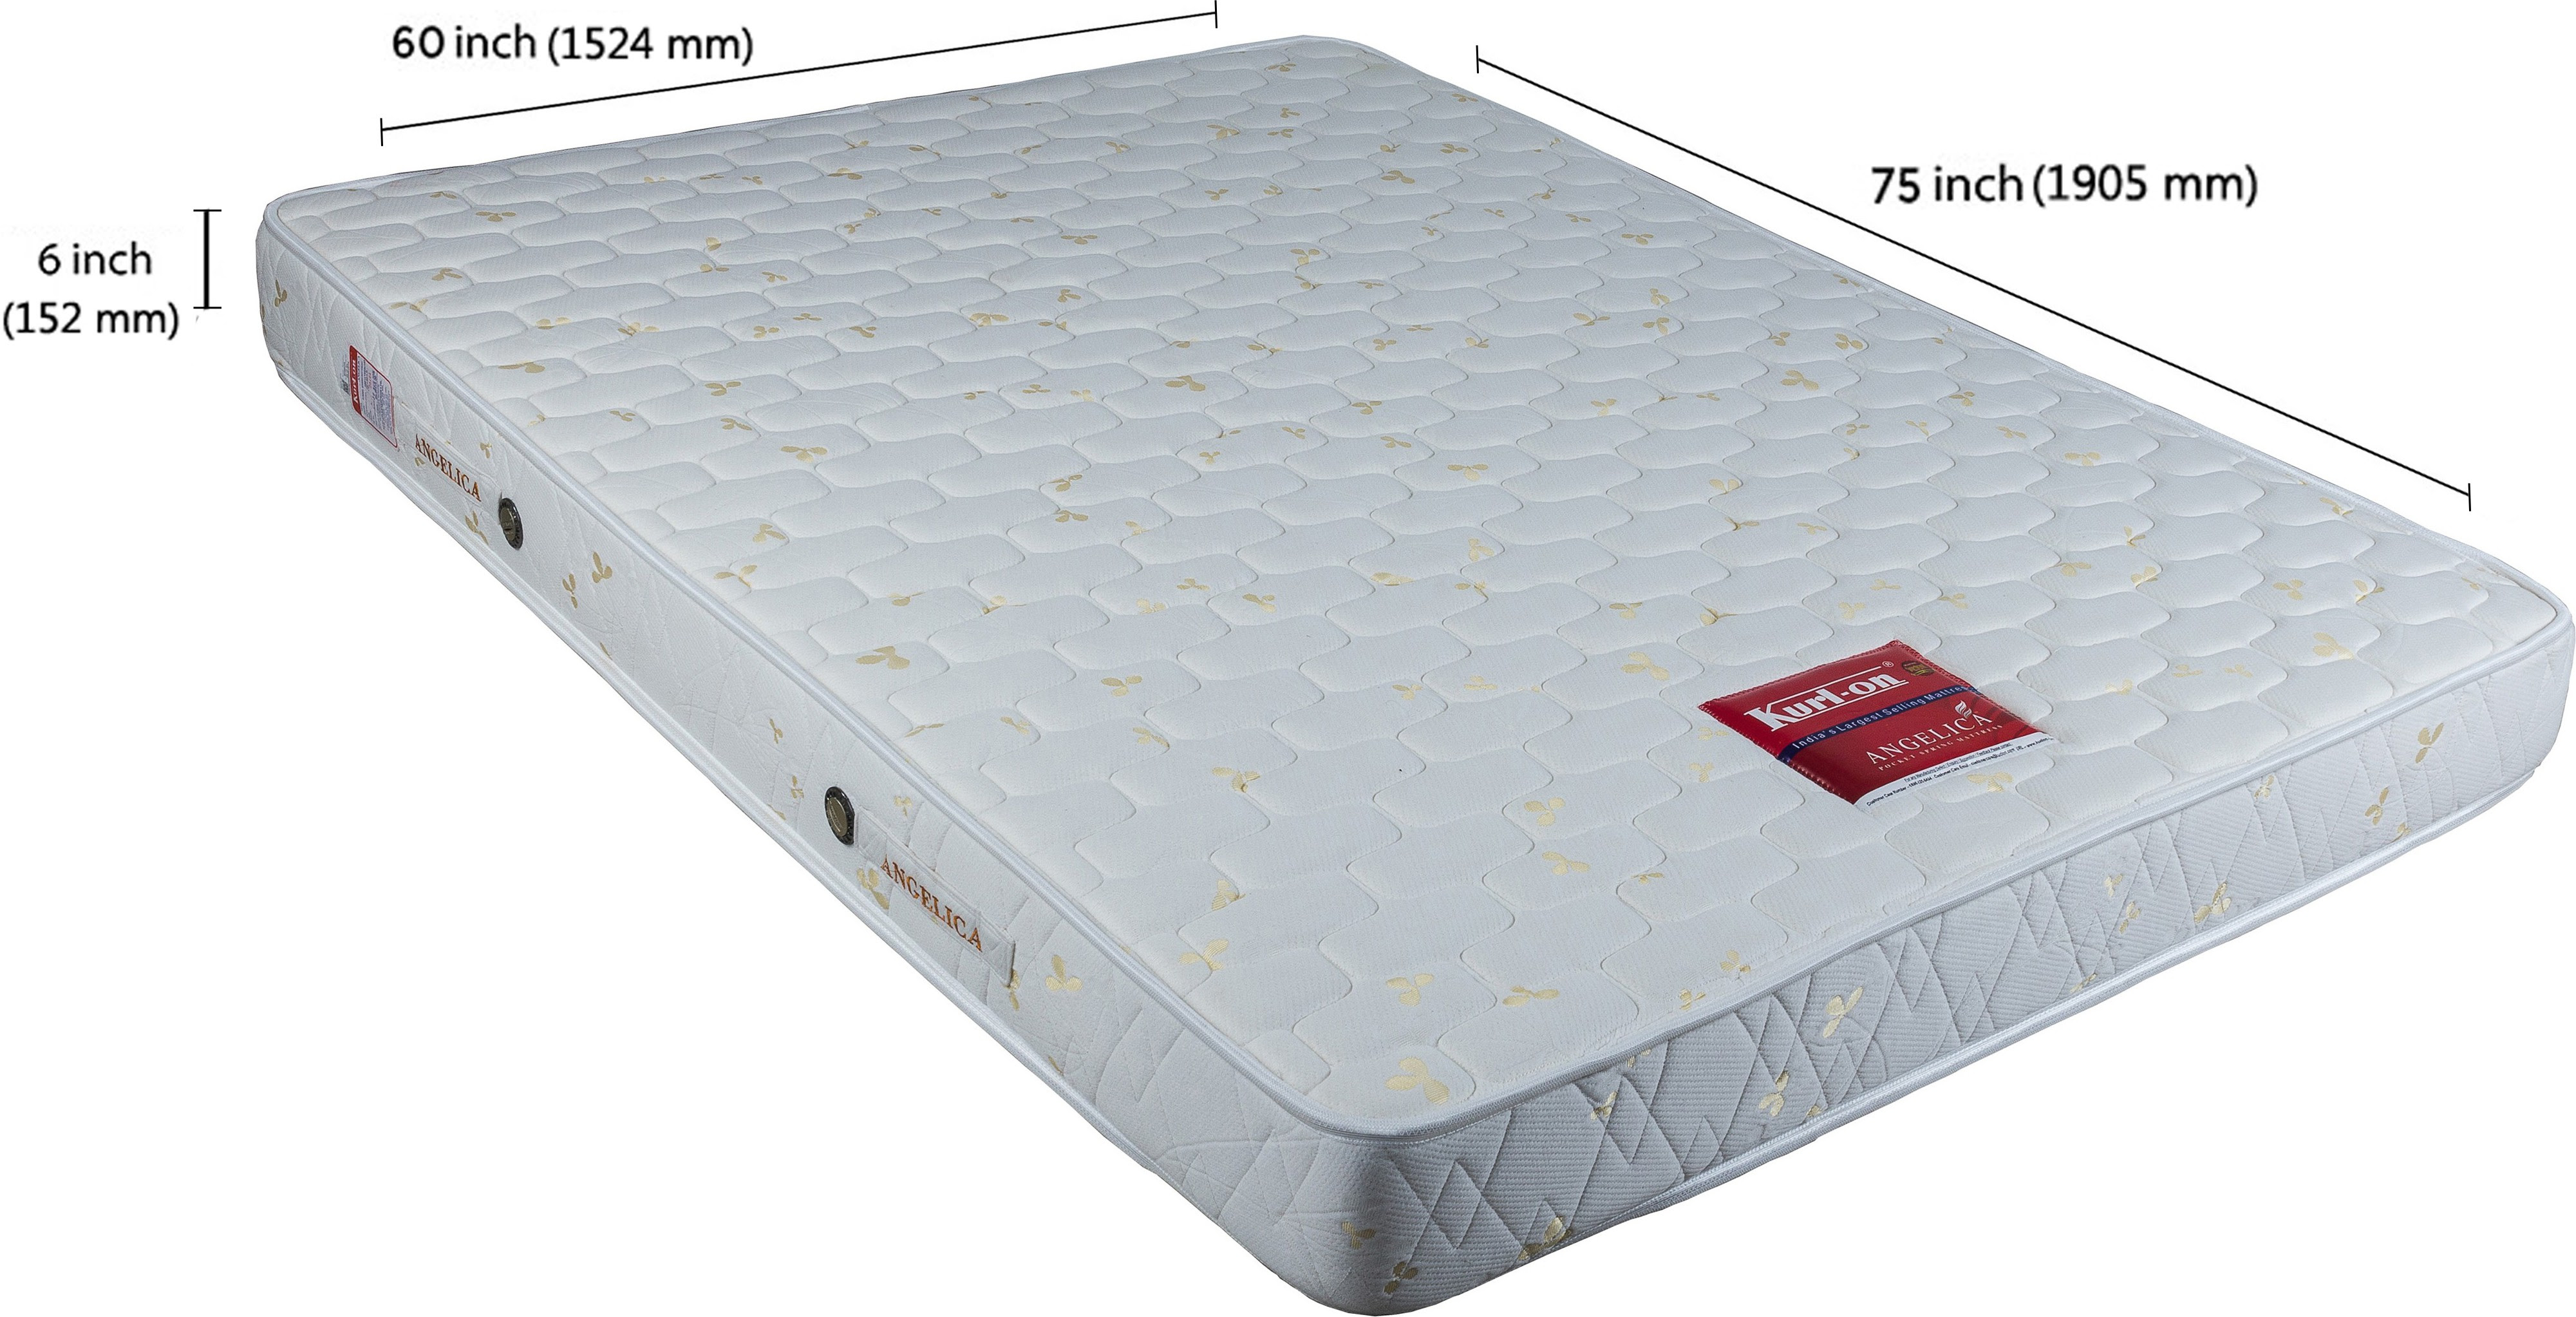 kurlon firmwich coir mattress review